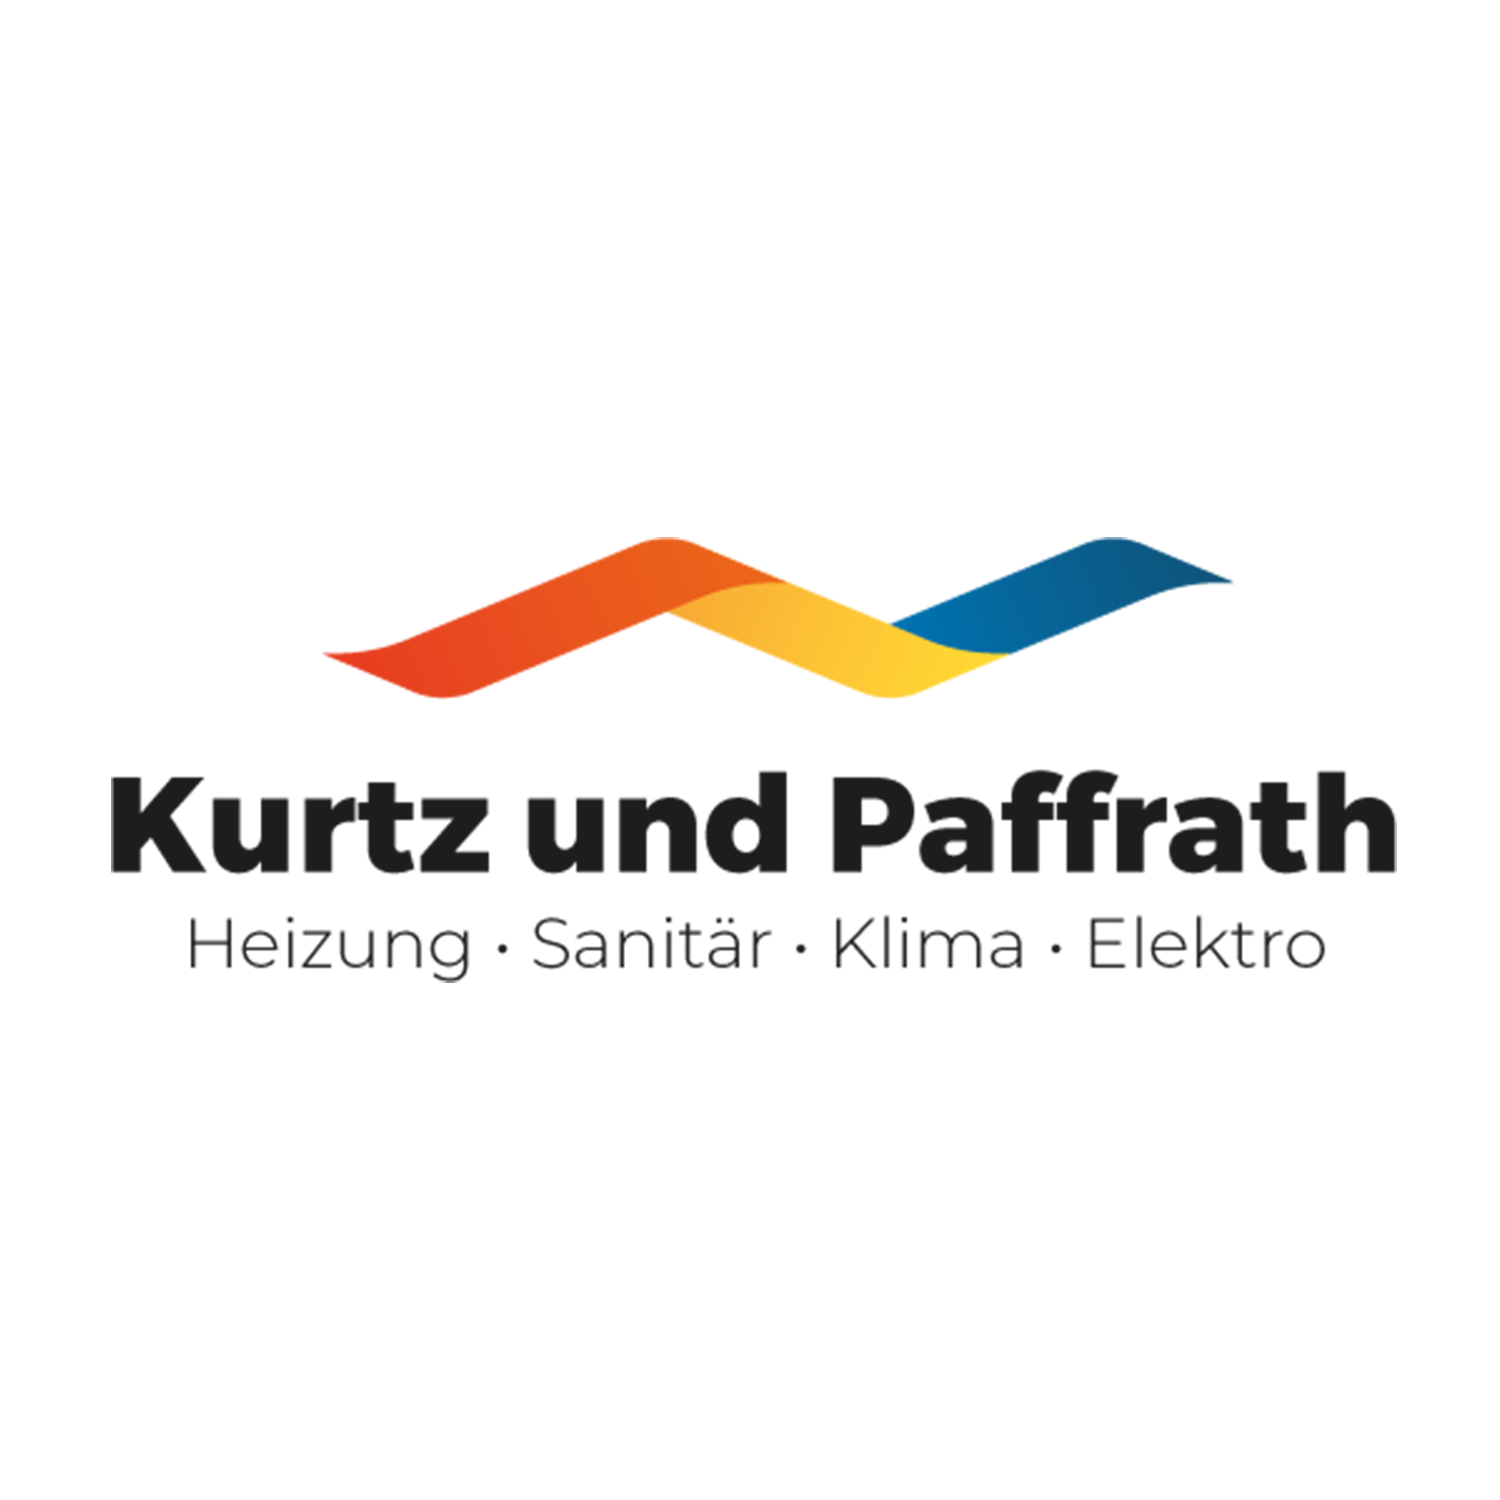 Kurtz und Paffrath GmbH